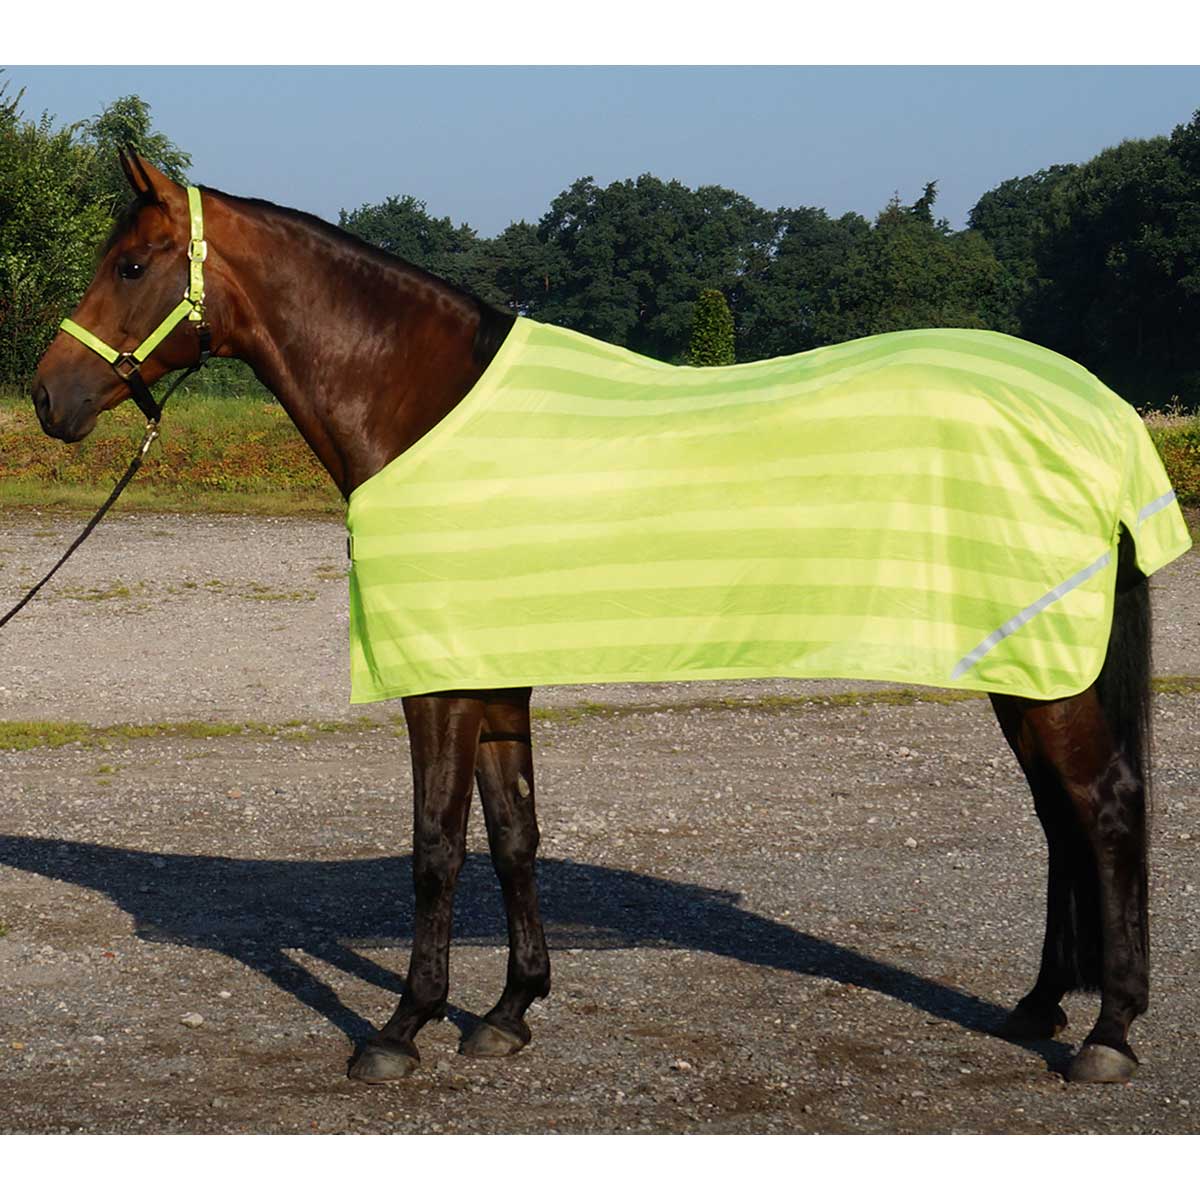 BUSSE REFLECTION pătură reflectorizantă pentru cai  165 cm